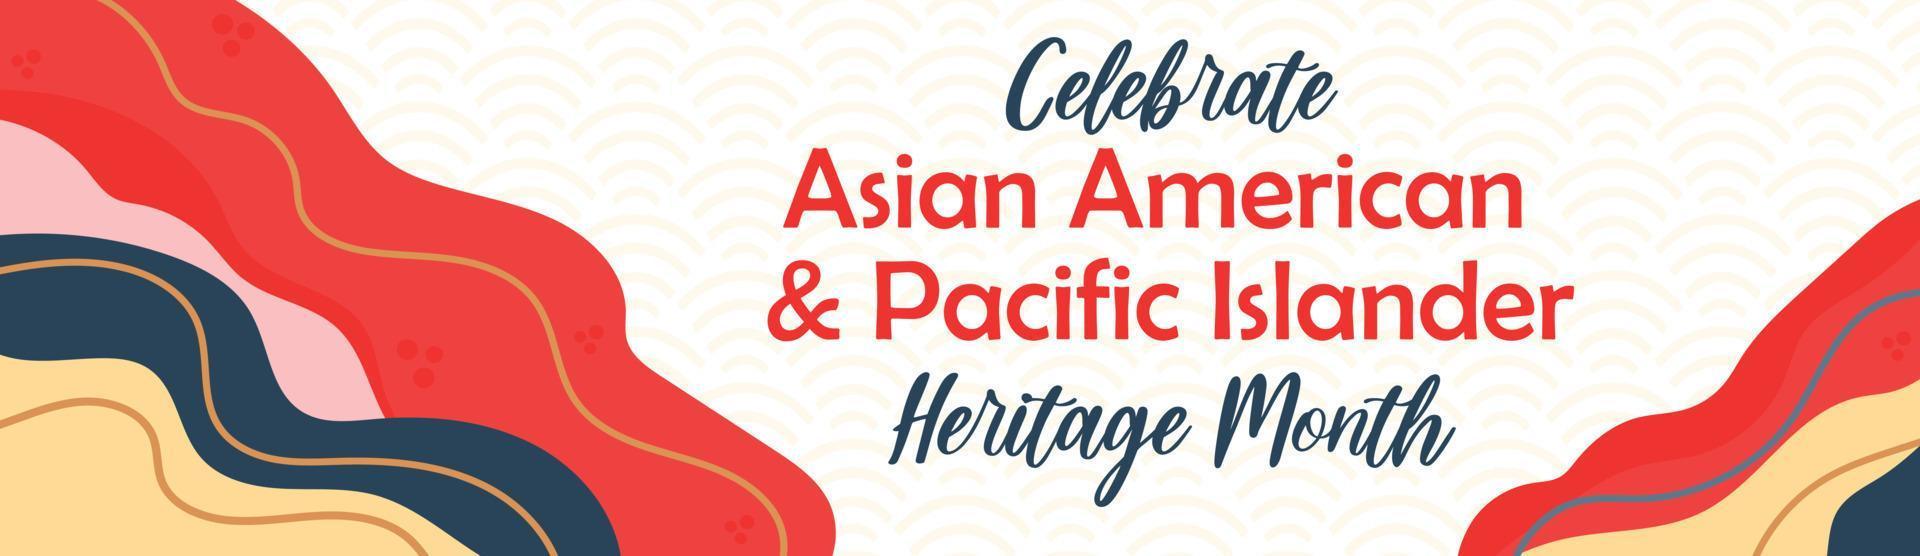 Asiatisk amerikan, Stillahavsöarnas arvsmånad - firande i usa. vektor banner med abstrakta former och linjer i traditionella asiatiska färger. gratulationskort, banner